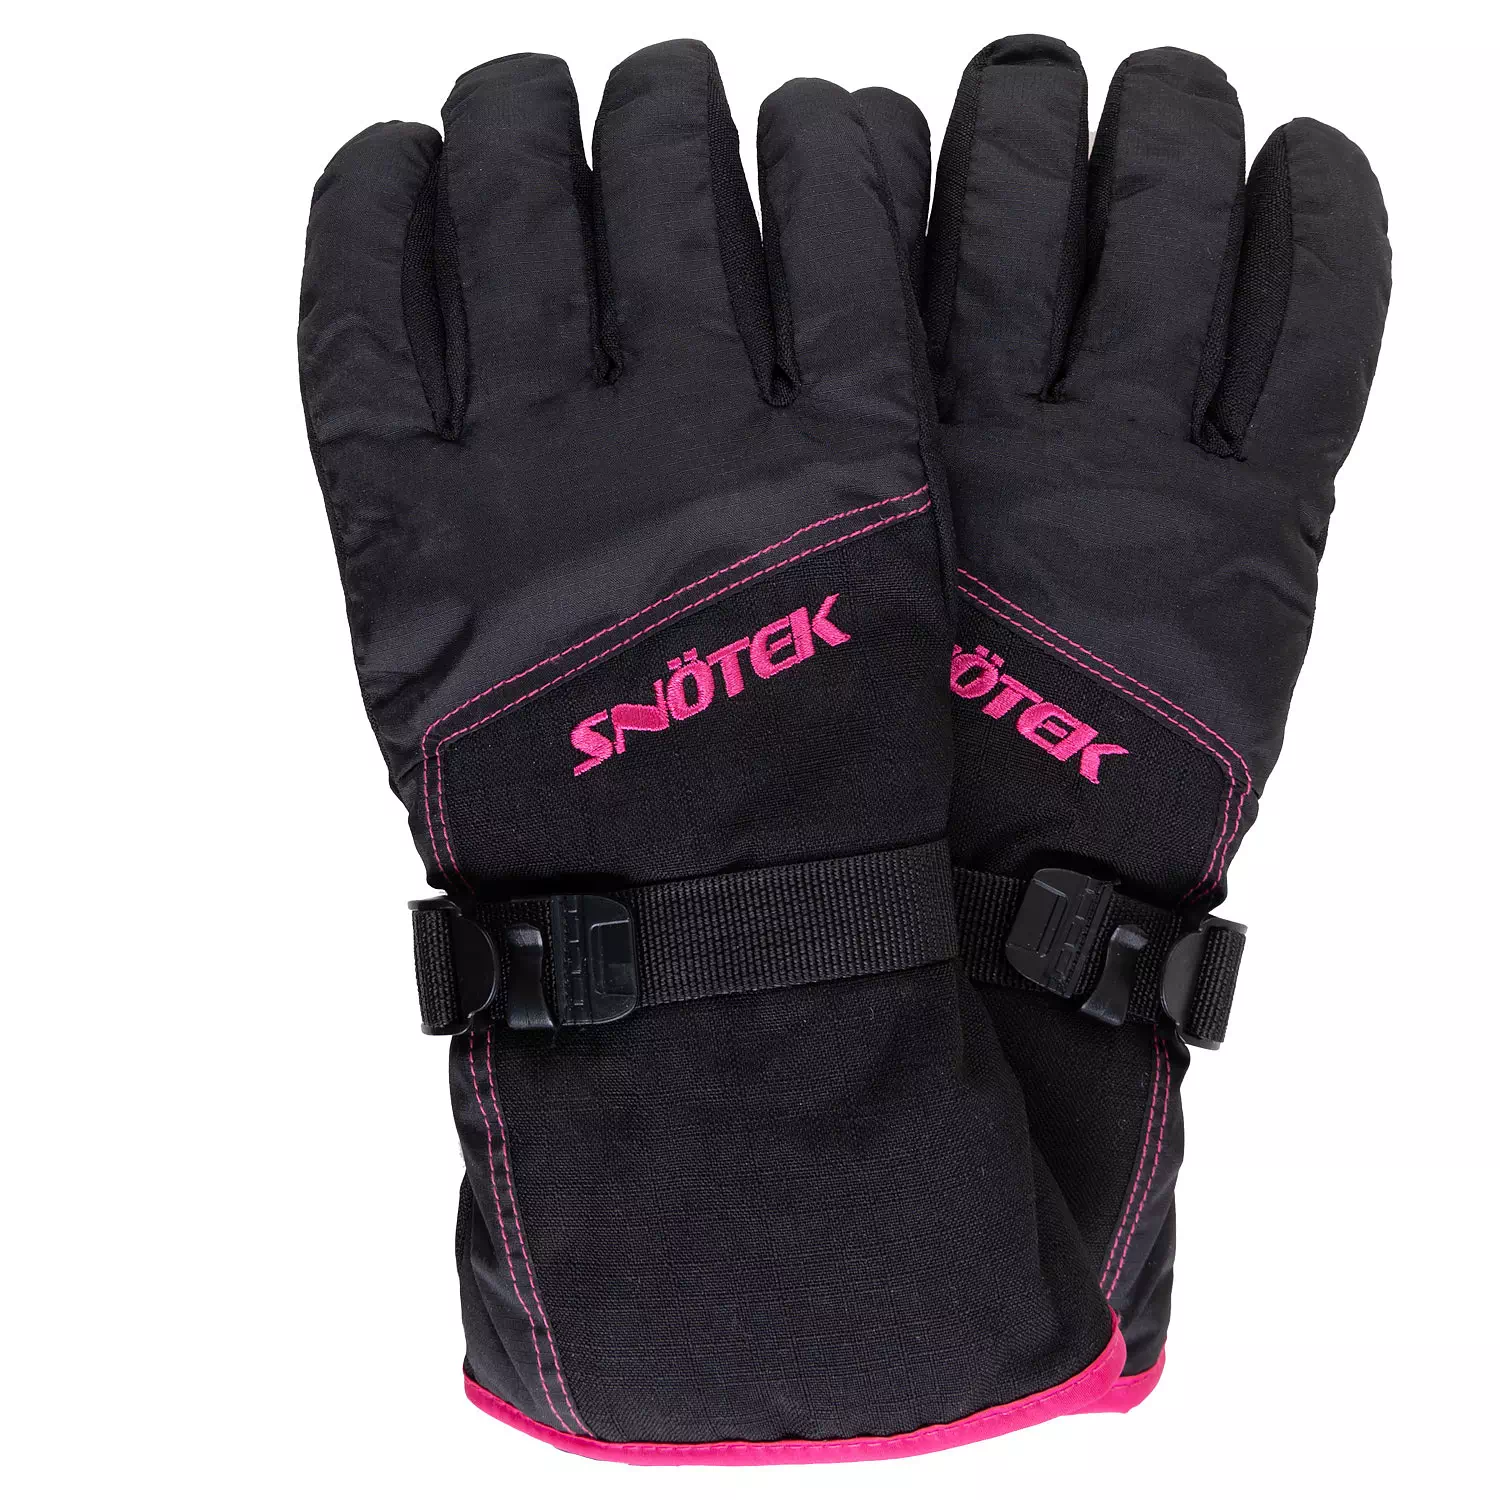 Snötek - Gants de ski d'hiver avec laisse de poignet, moyen (M). Colour:  black. Size: m, Fr